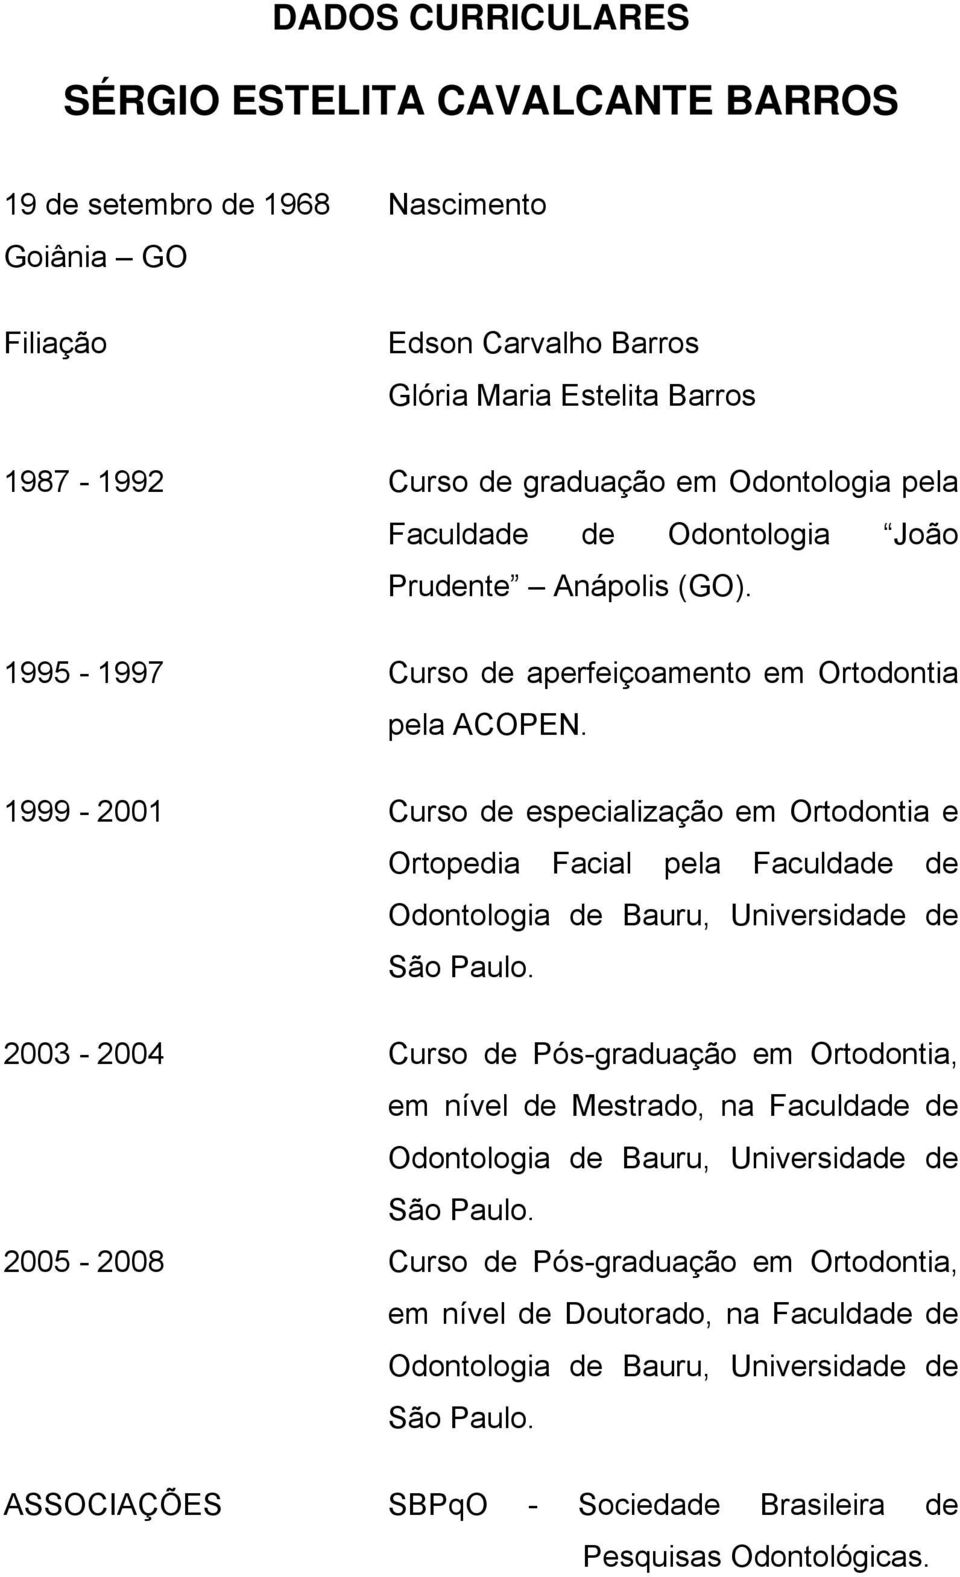 1999-2001 Curso de especialização em Ortodontia e Ortopedia Facial pela Faculdade de Odontologia de Bauru, Universidade de São Paulo.